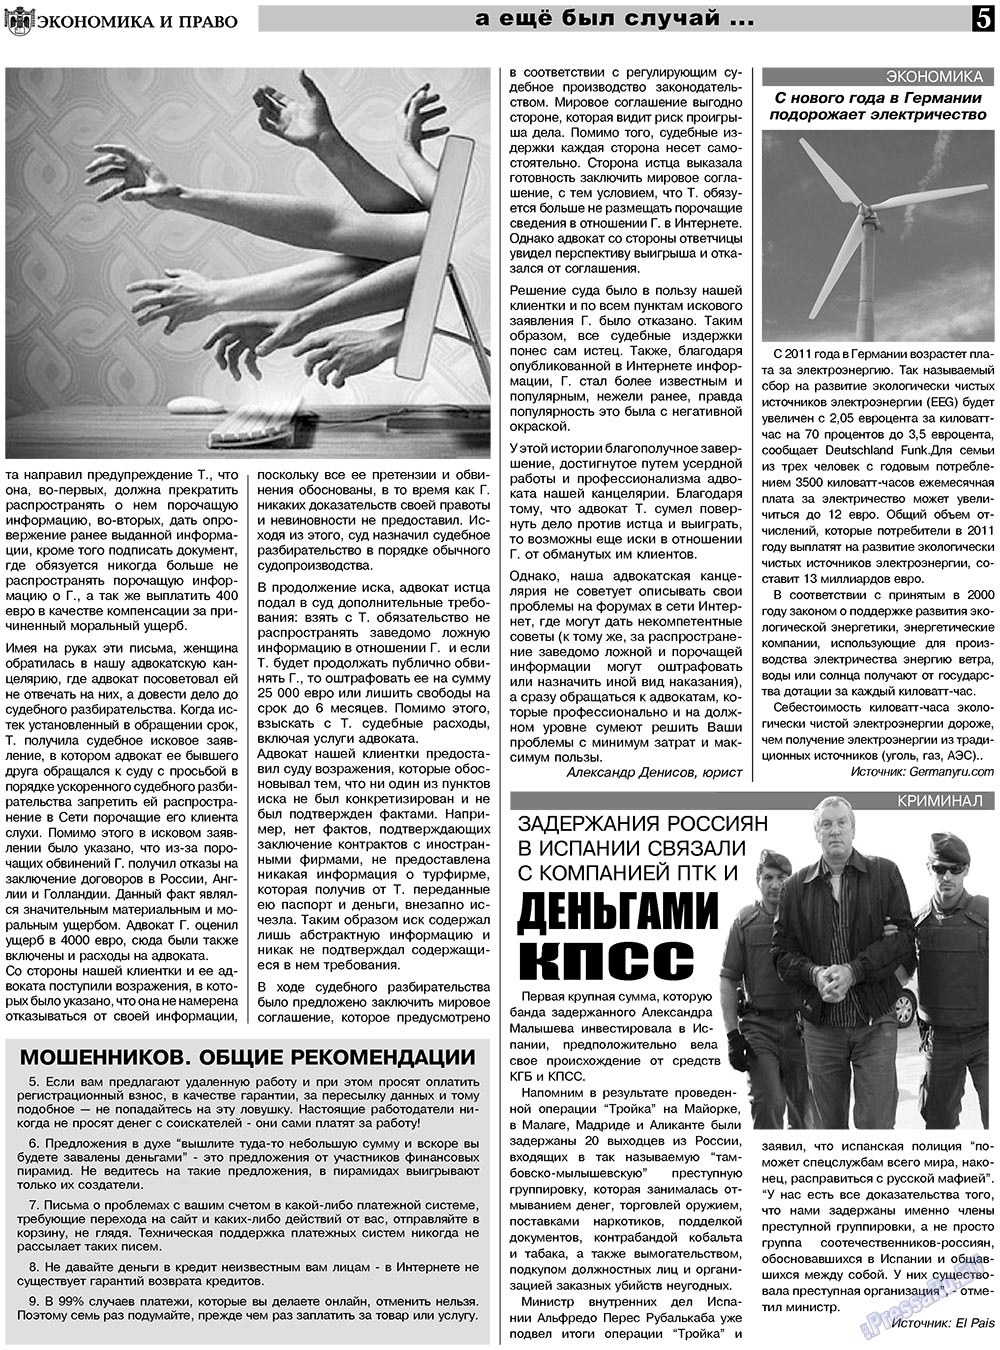 Экономика и право, газета. 2010 №11 стр.5